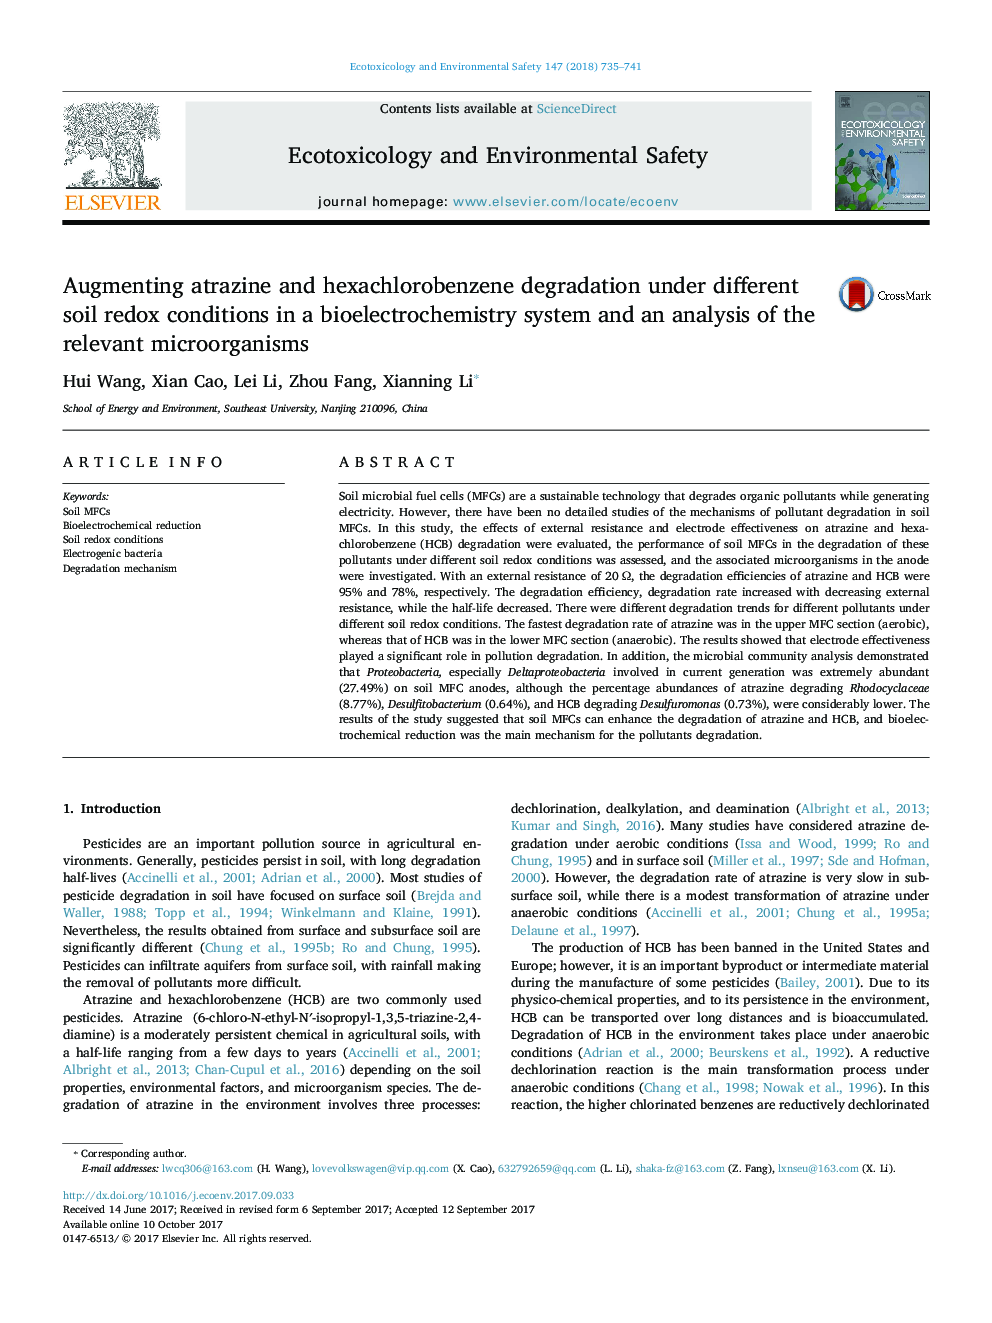 افزایش ضریب آترازین و هگزاکلروبنزن تحت شرایط مختلف ردوکس خاک در یک سیستم بیو الکتروشیمیایی و تجزیه و تحلیل میکروارگانیسم های مرتبط